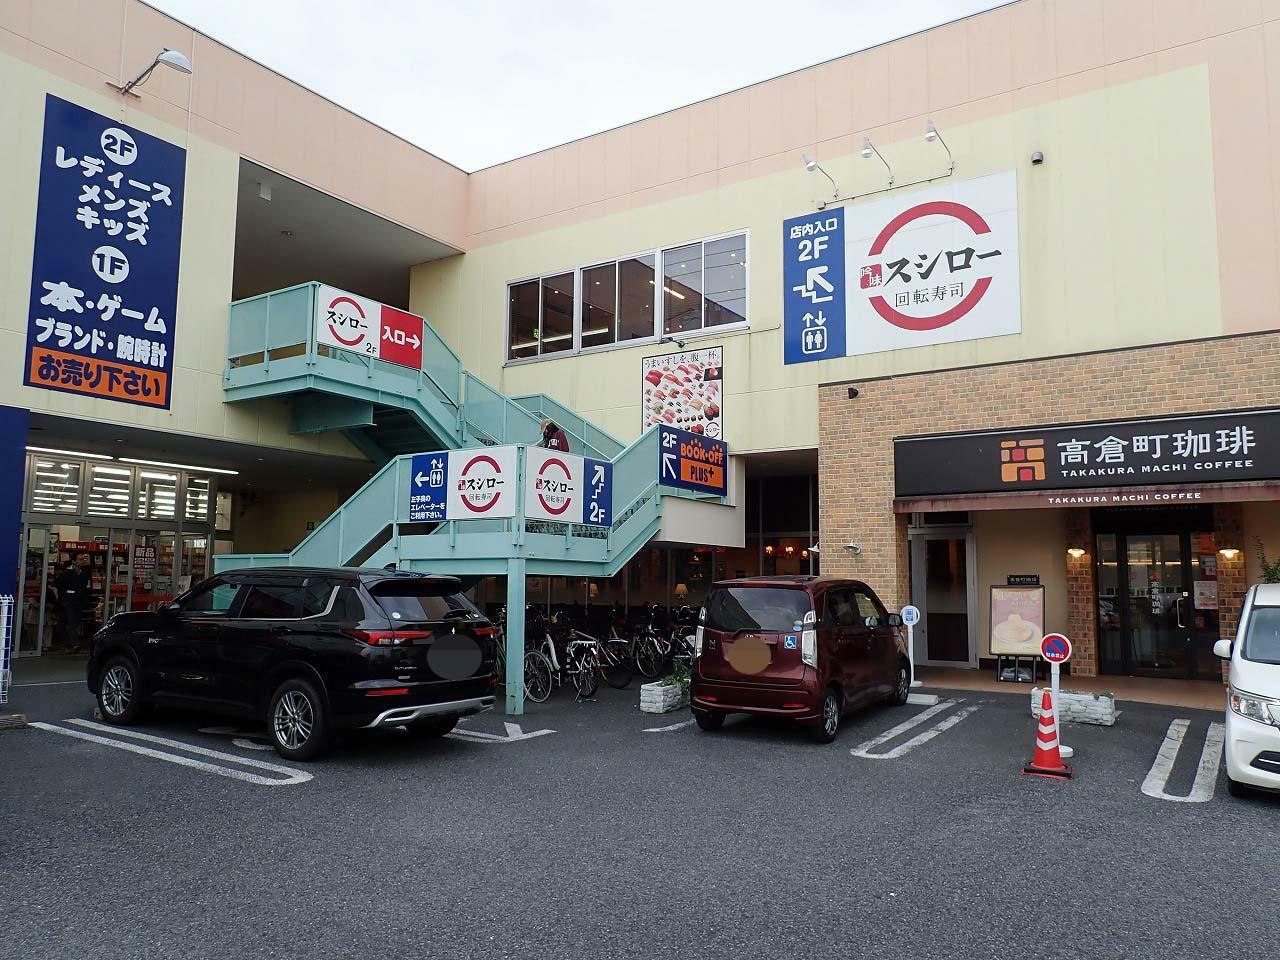 店舗の前に駐車場が完備されていて、同じ建物では『スシロー 川越店』『高倉町珈琲 川越店』が営業しています